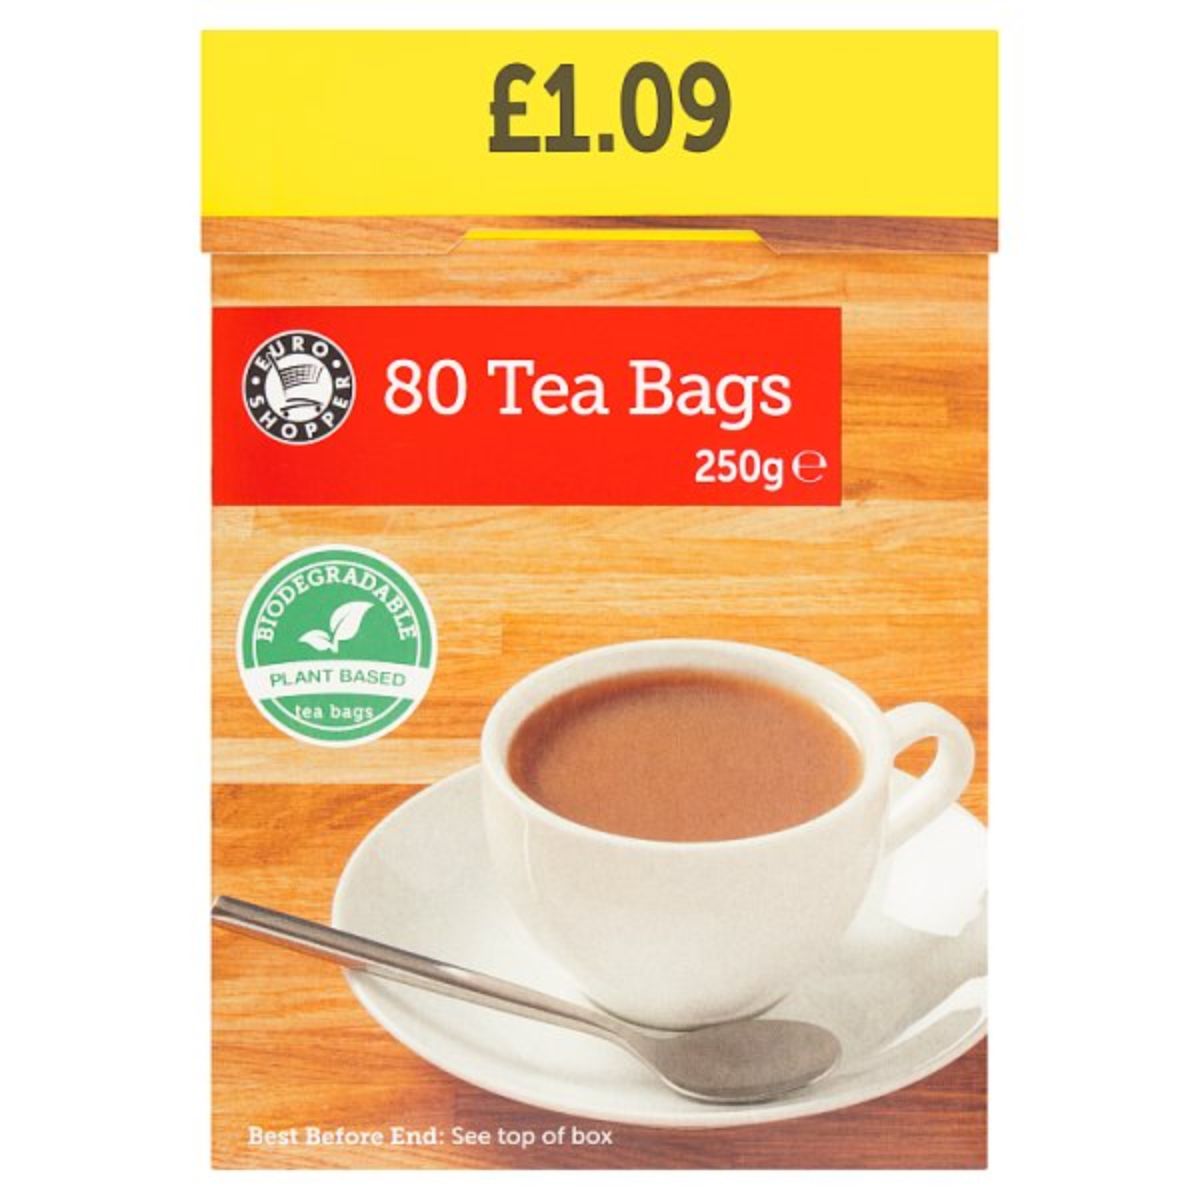 Euro Shopper 80 tea bags 250g.